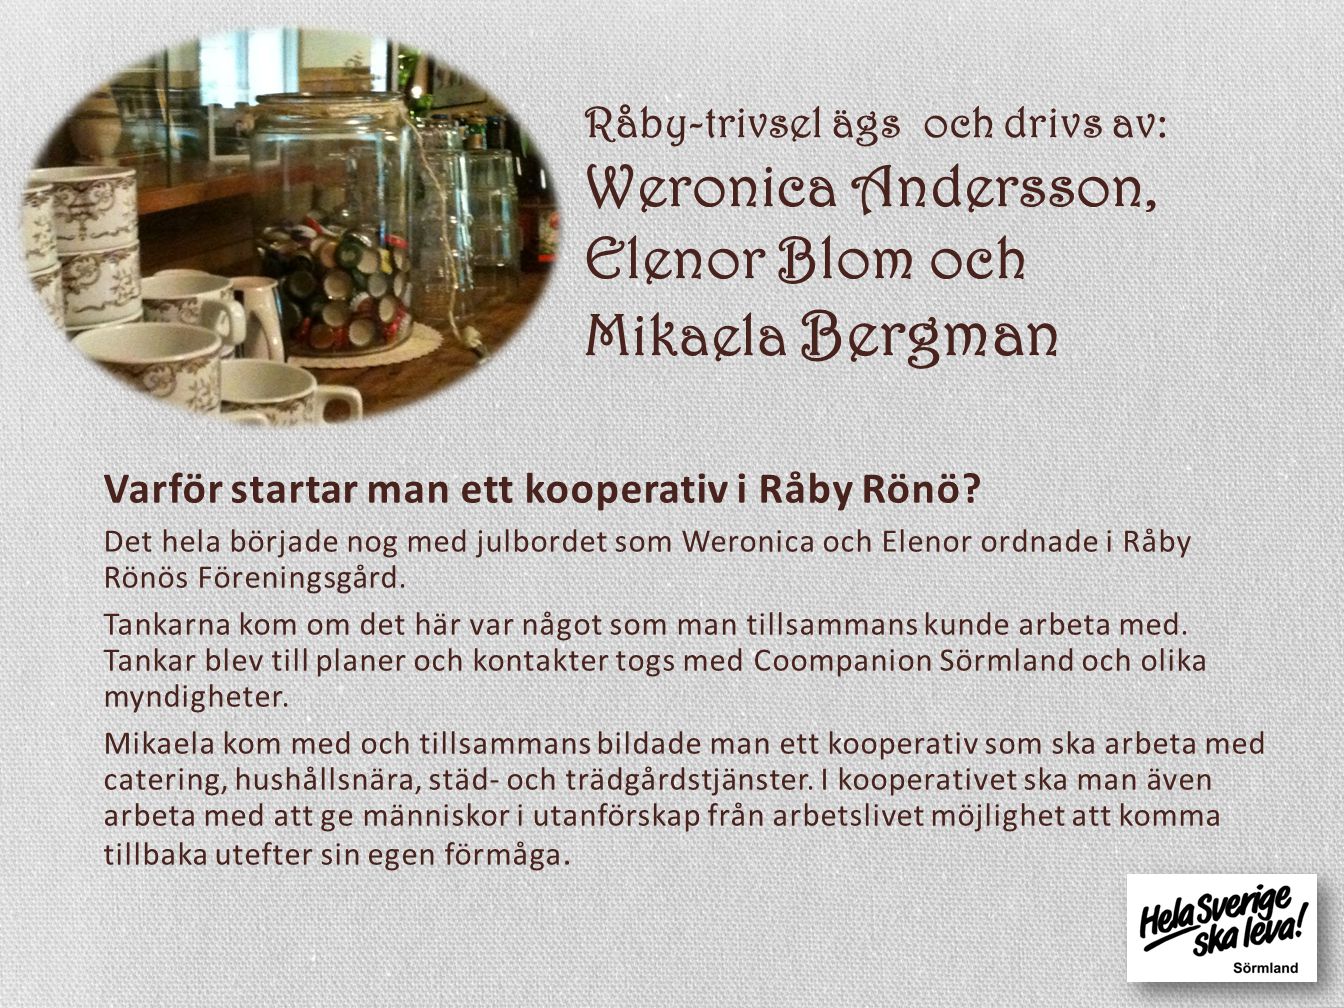 Råby-trivsel ägs och drivs av: Weronica Andersson, Elenor Blom och Mikaela Bergman Varför startar man ett kooperativ i Råby Rönö.